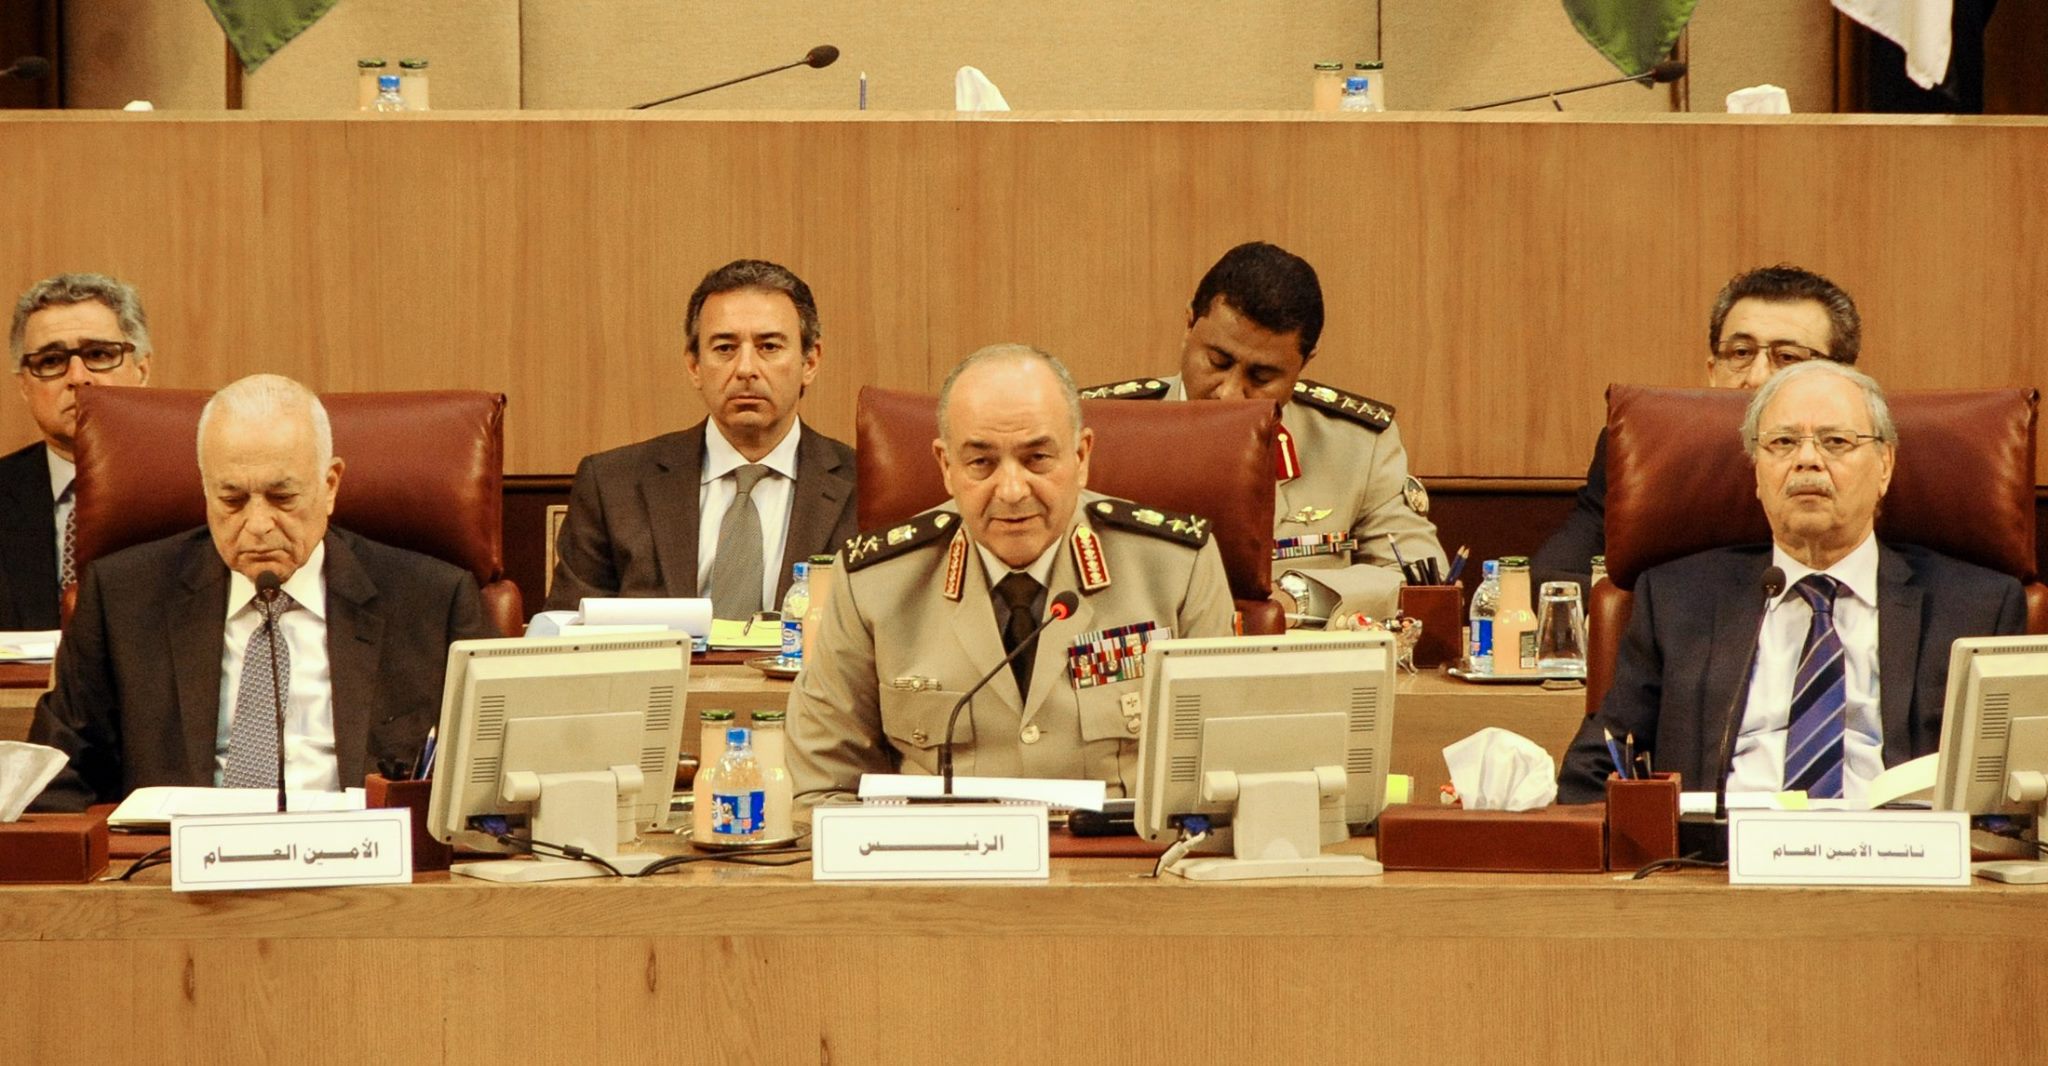 رئيس الأركان: يجب الانتهاء من تشكيل القوة العربية قبل 29 يونيو